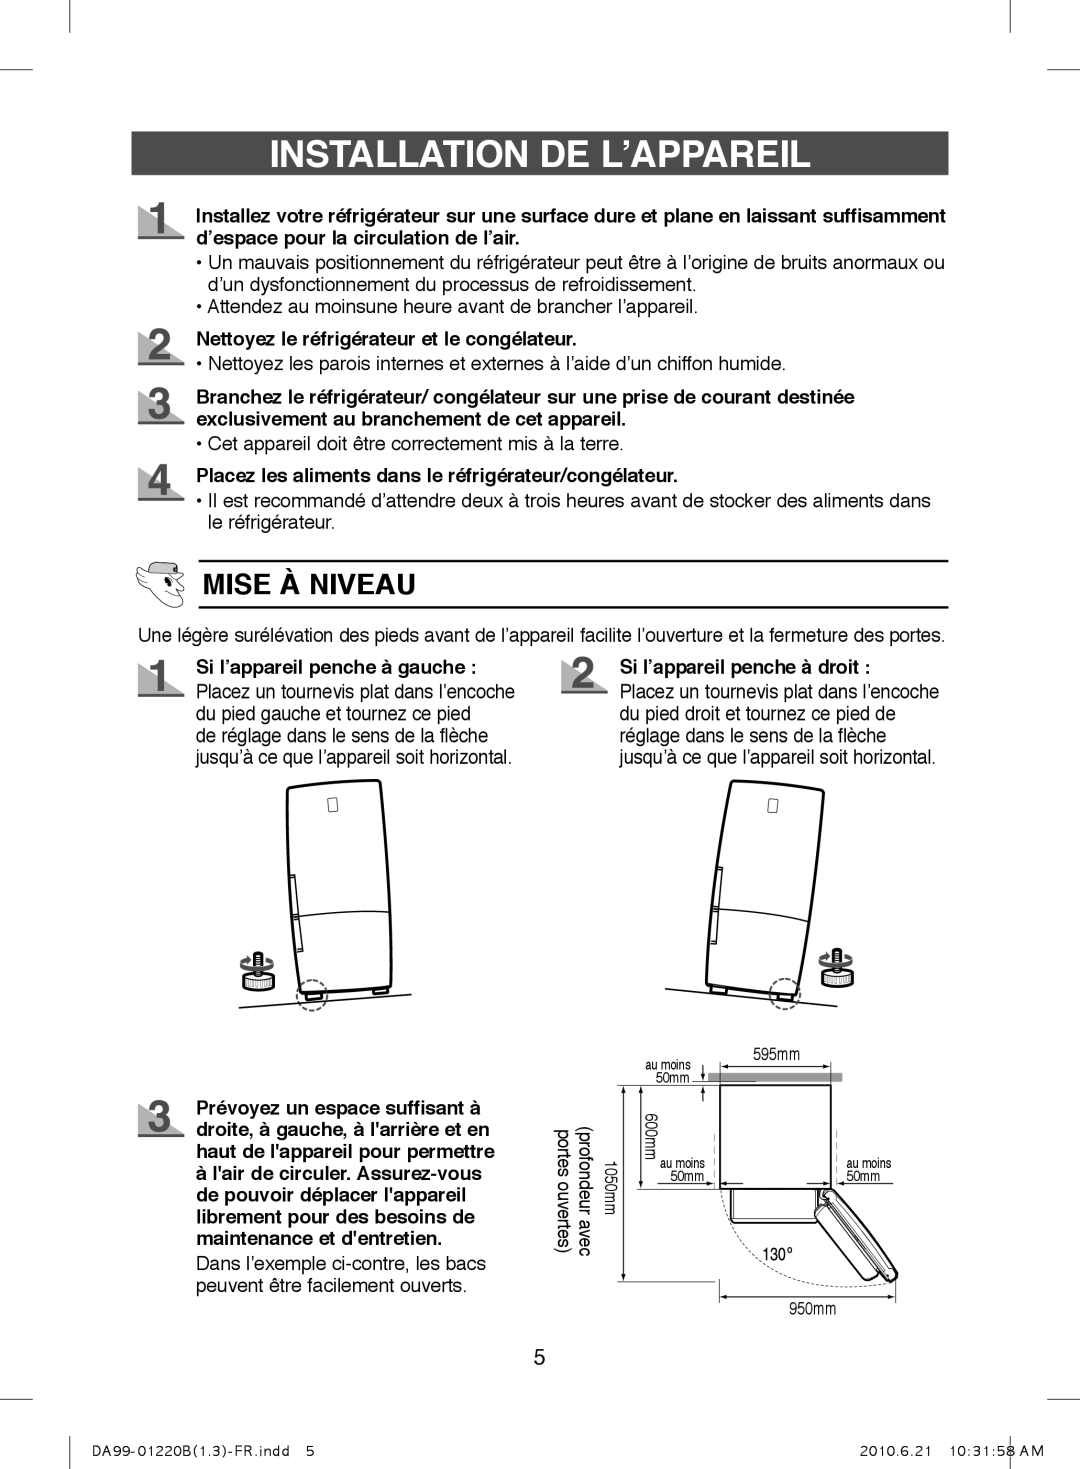 Samsung RL38SBSW1/XEF manual Installation De L’Appareil, Mise À Niveau, Nettoyez le réfrigérateur et le congélateur 